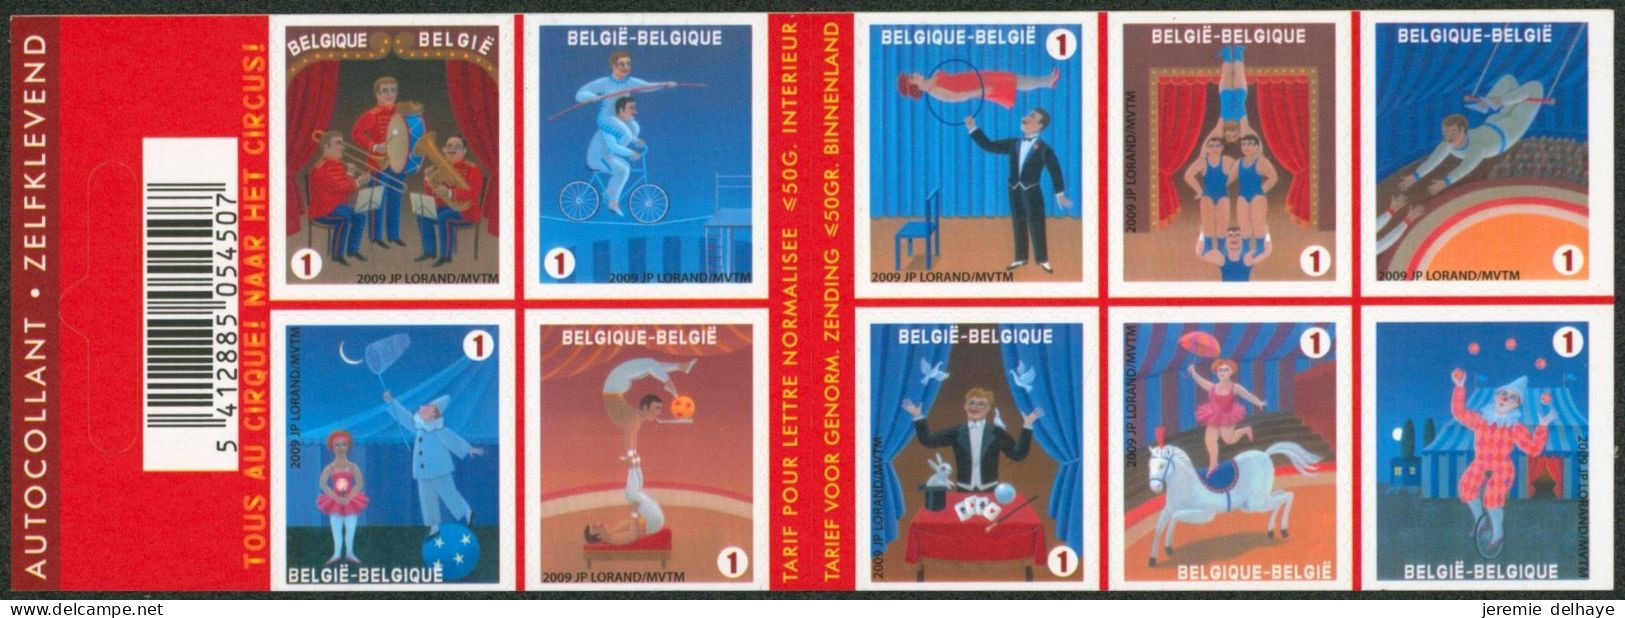 Carnet (2009) - B105** (MNH) Carnet De 10 Timbres Sur Le Cirque / Circus. - 1997-… Dauerhafte Gültigkeit [B]